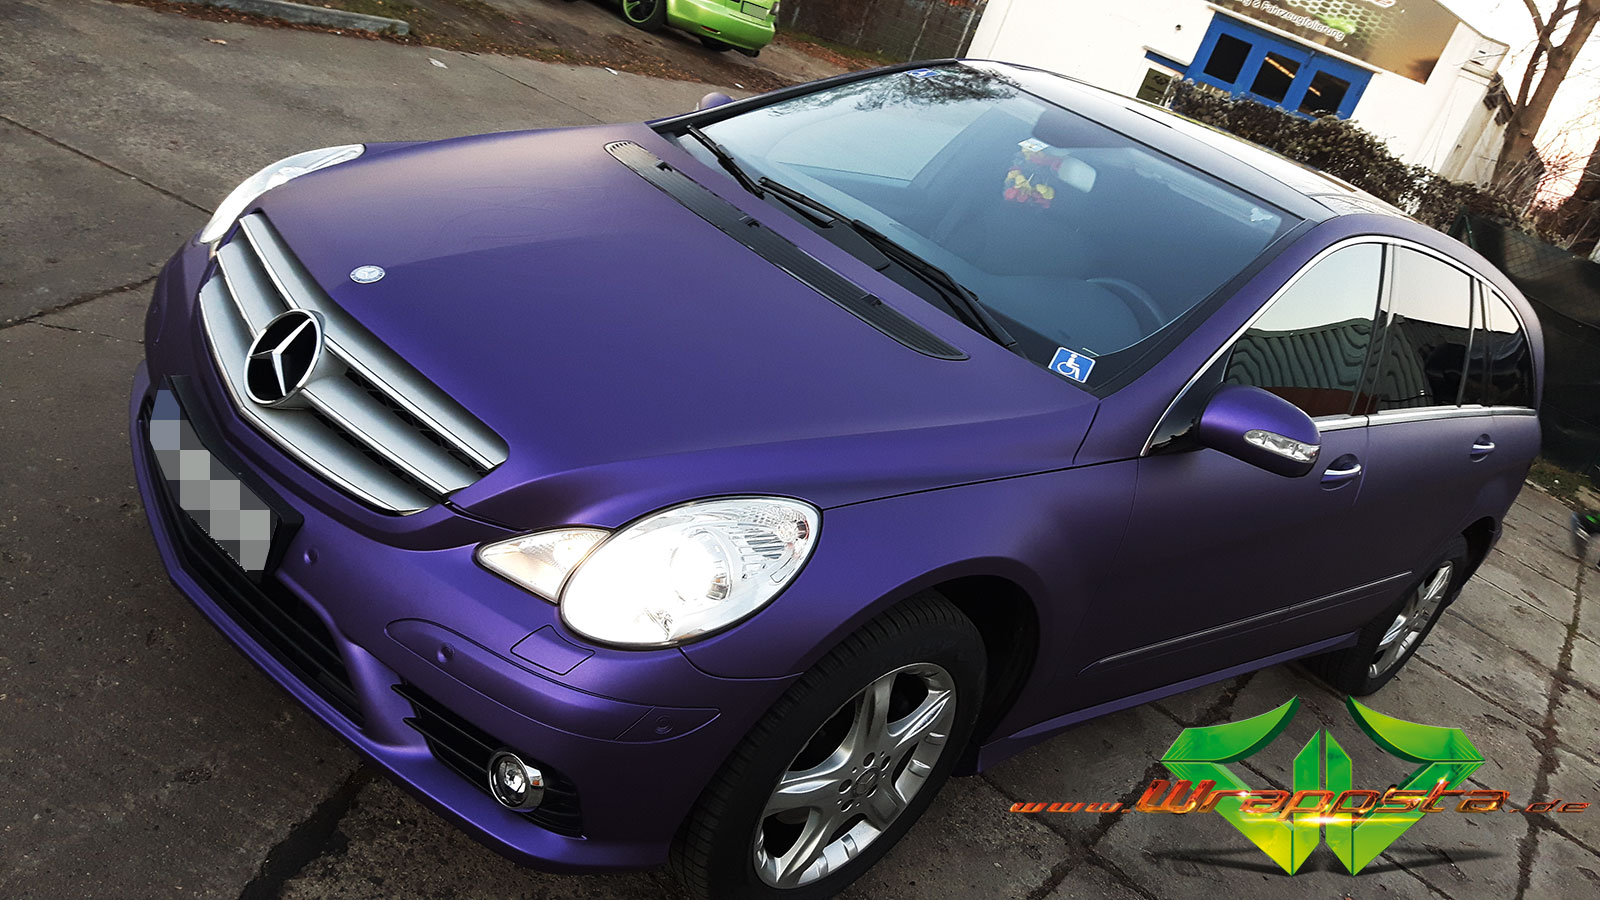 https://www.wrappsta.de/tl_files/img/gallery/Mercedes%20R%20Klasse%20-%20Matte%20Metallic%20Purple/wrappsta.de_carwrapping-vollfolierung_mercedes-r-klasse_matte-metallic-purple_09.jpg